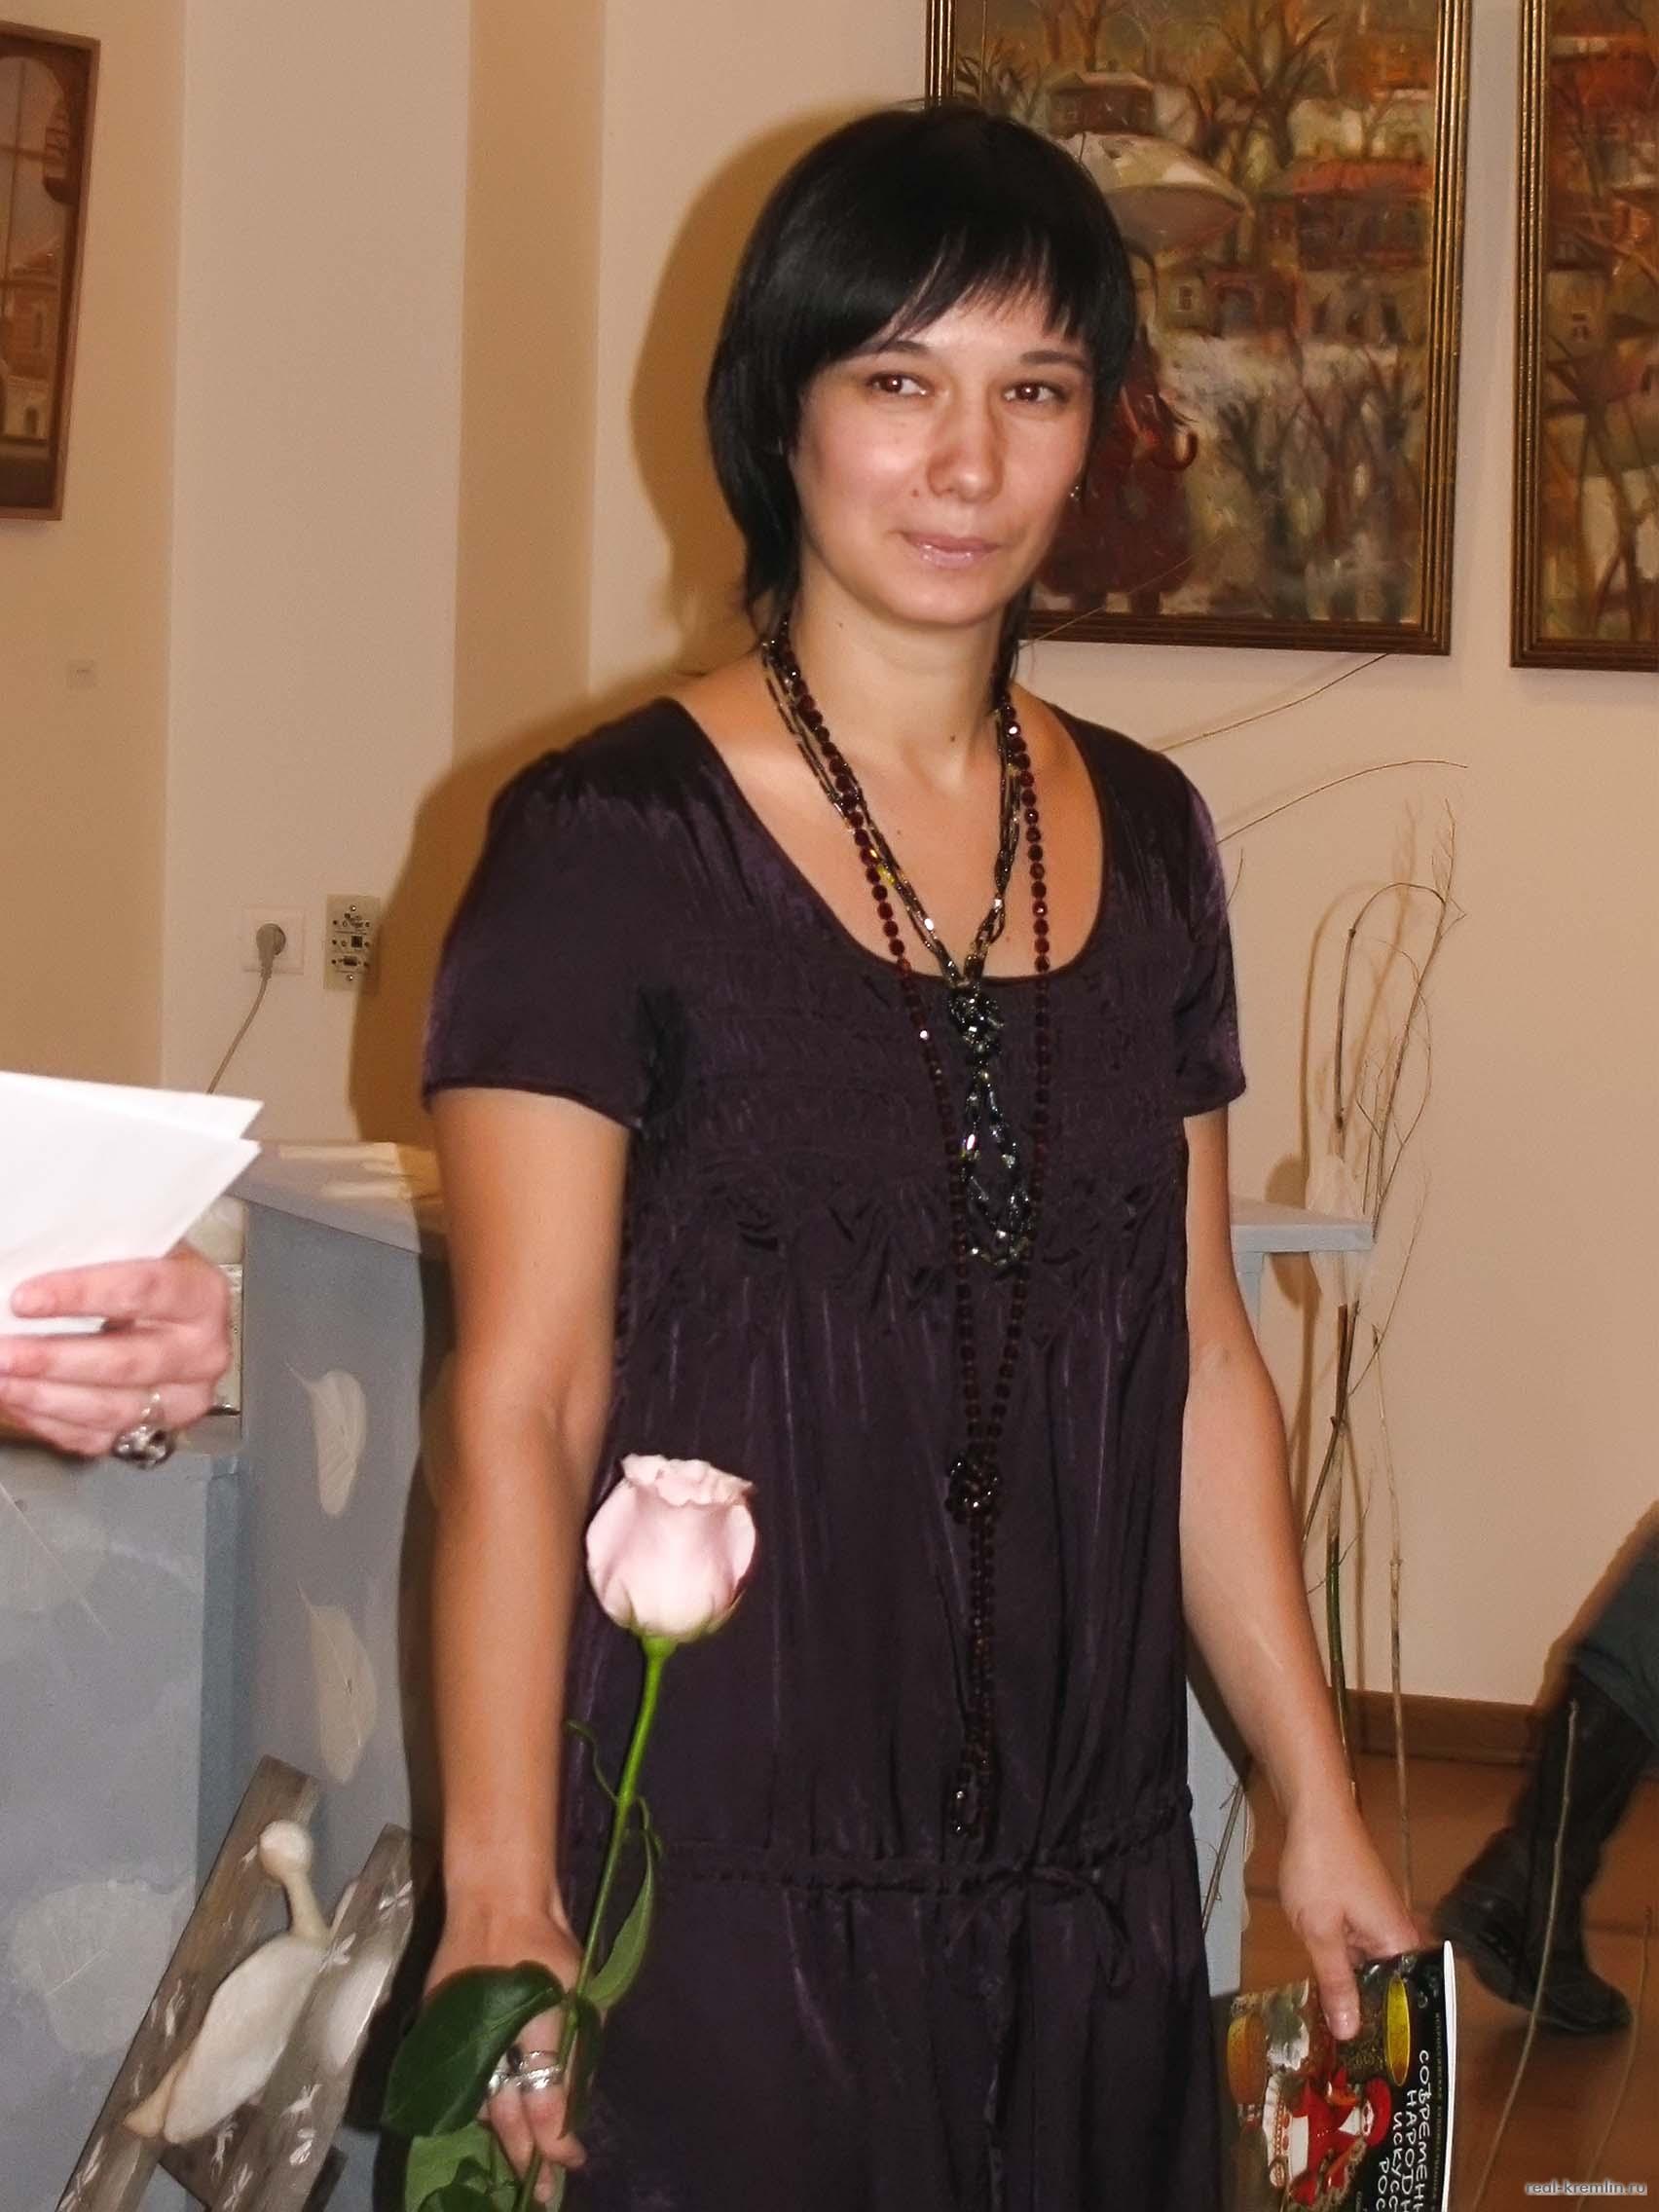 Елена Ермолина с розой